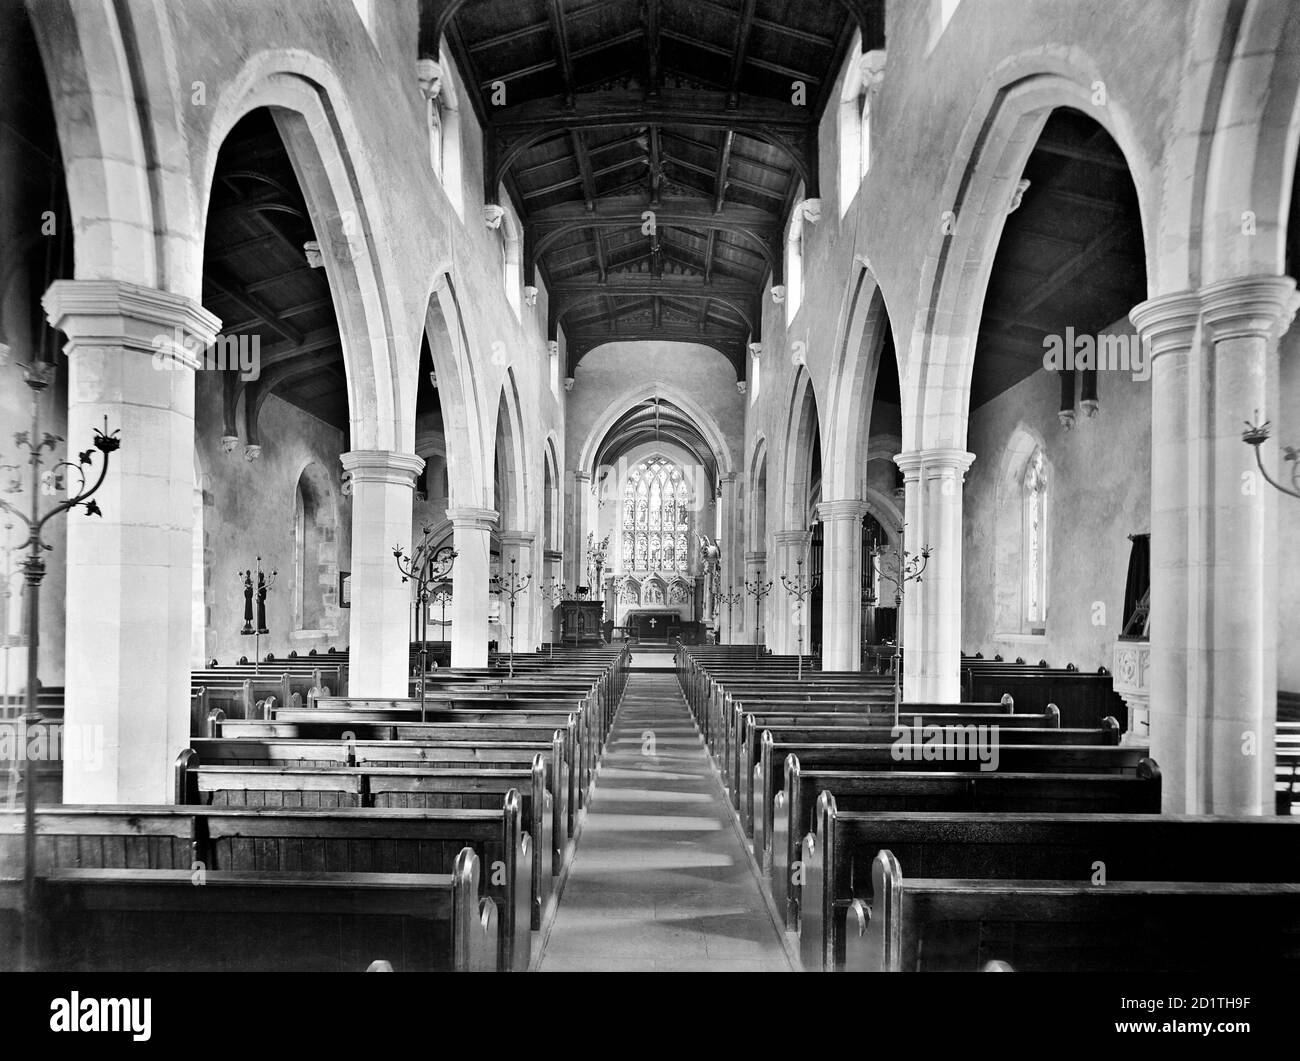 ST MARYS CHURCH, Amersham, Buckinghamshire. Das Innere der Kirche, ursprünglich aus dem 13. Jahrhundert, Blick nach Osten nach unten das schiffige Kirchenschiff in Richtung des Chorals. Fotografiert von Henry Taunt (aktiv 1860-1922). Stockfoto